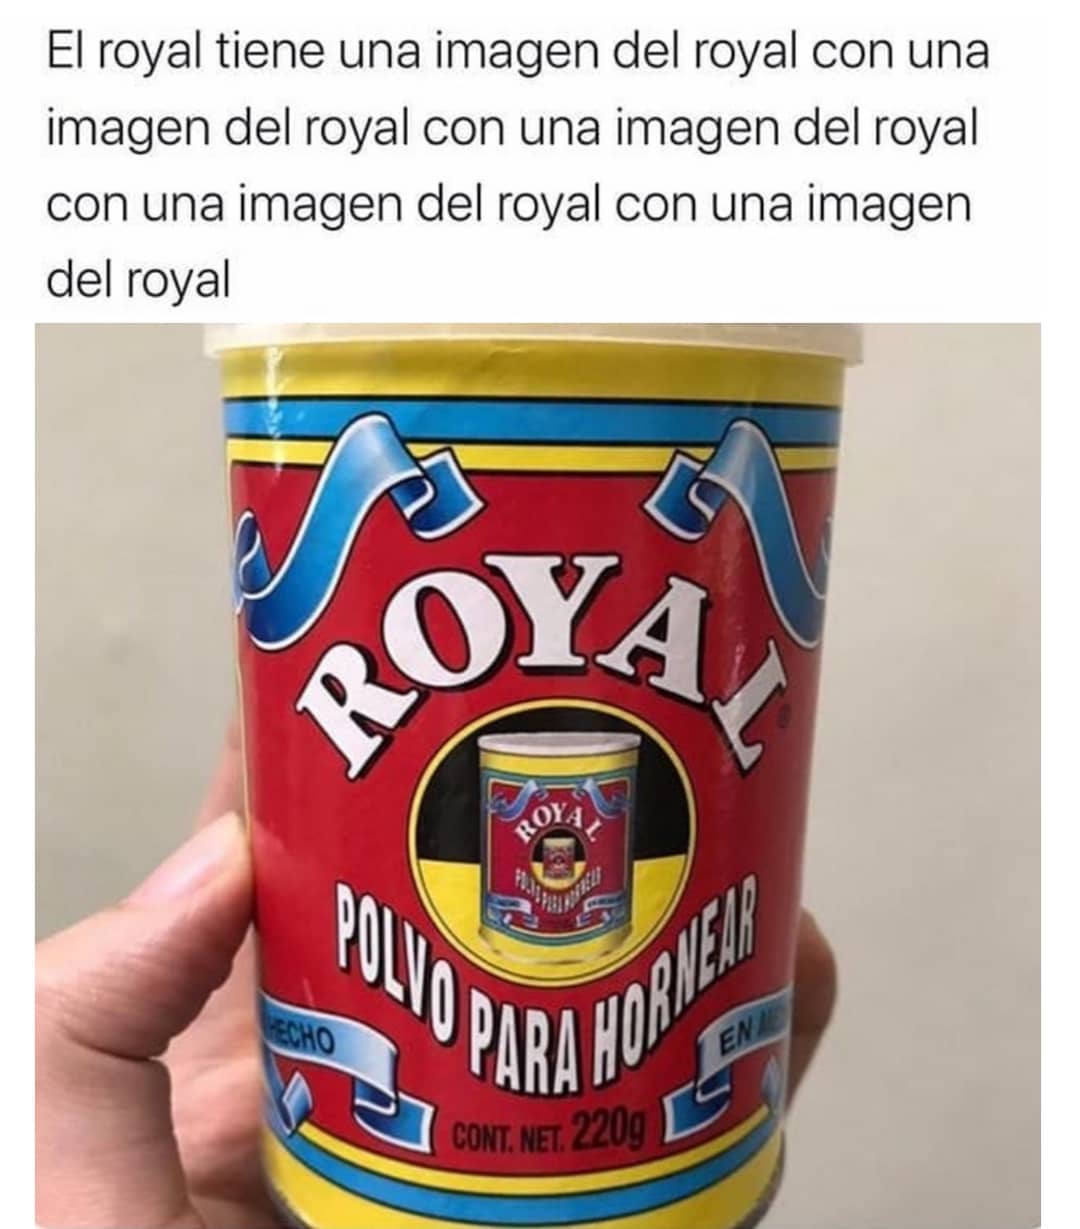 El royal tiene una imagen del royal con una imagen del royal con una imagen del royal con una imagen del royal con una imagen del royal.